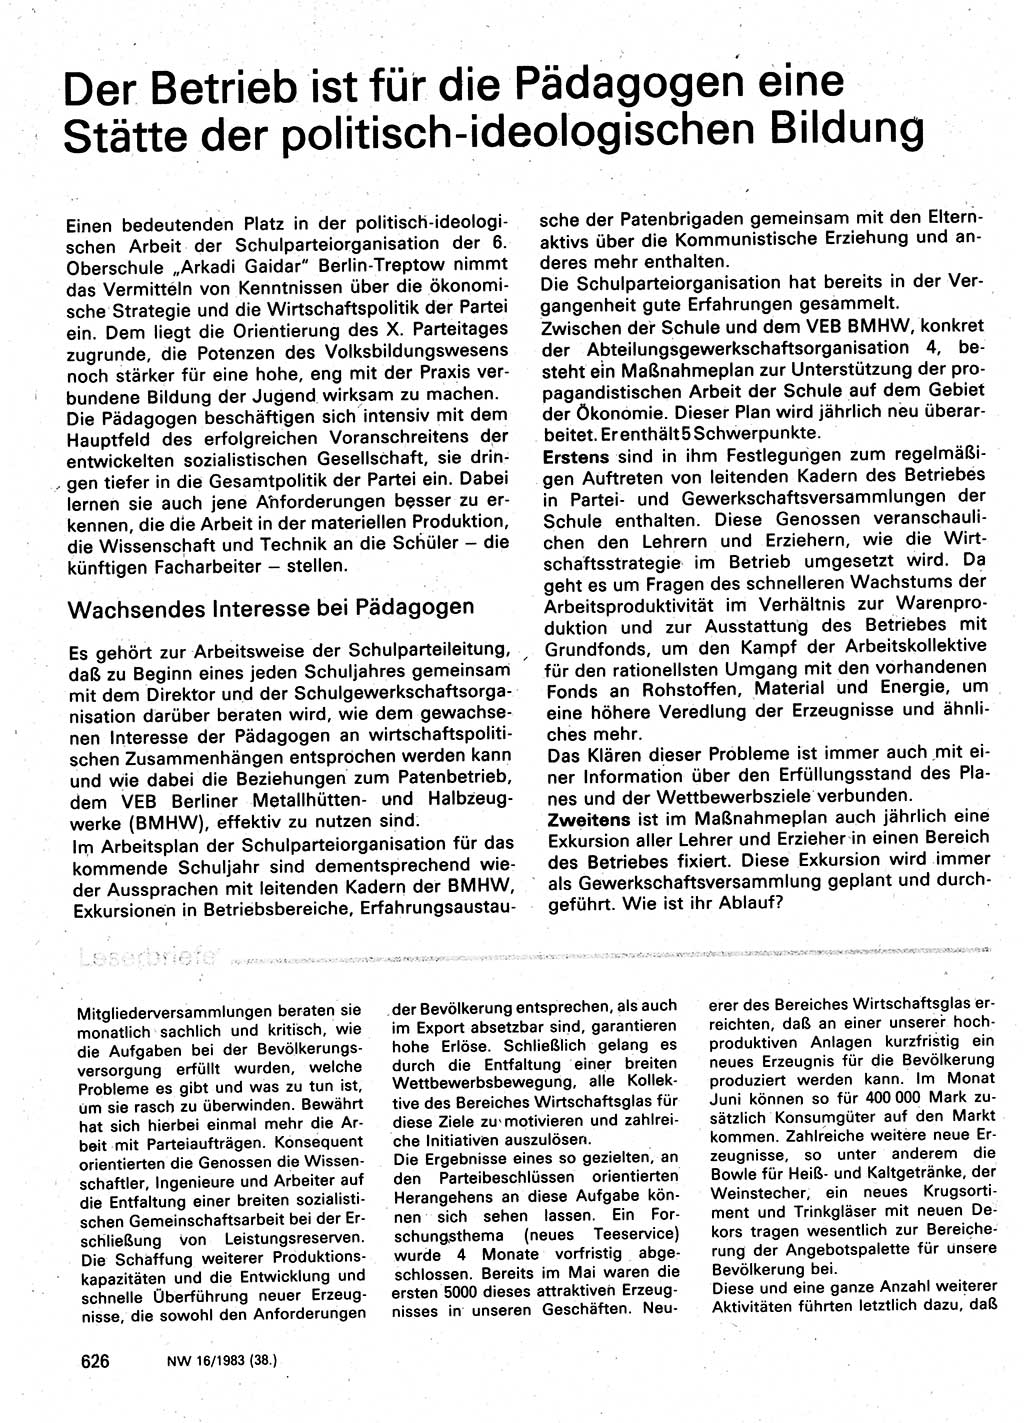 Neuer Weg (NW), Organ des Zentralkomitees (ZK) der SED (Sozialistische Einheitspartei Deutschlands) für Fragen des Parteilebens, 38. Jahrgang [Deutsche Demokratische Republik (DDR)] 1983, Seite 626 (NW ZK SED DDR 1983, S. 626)